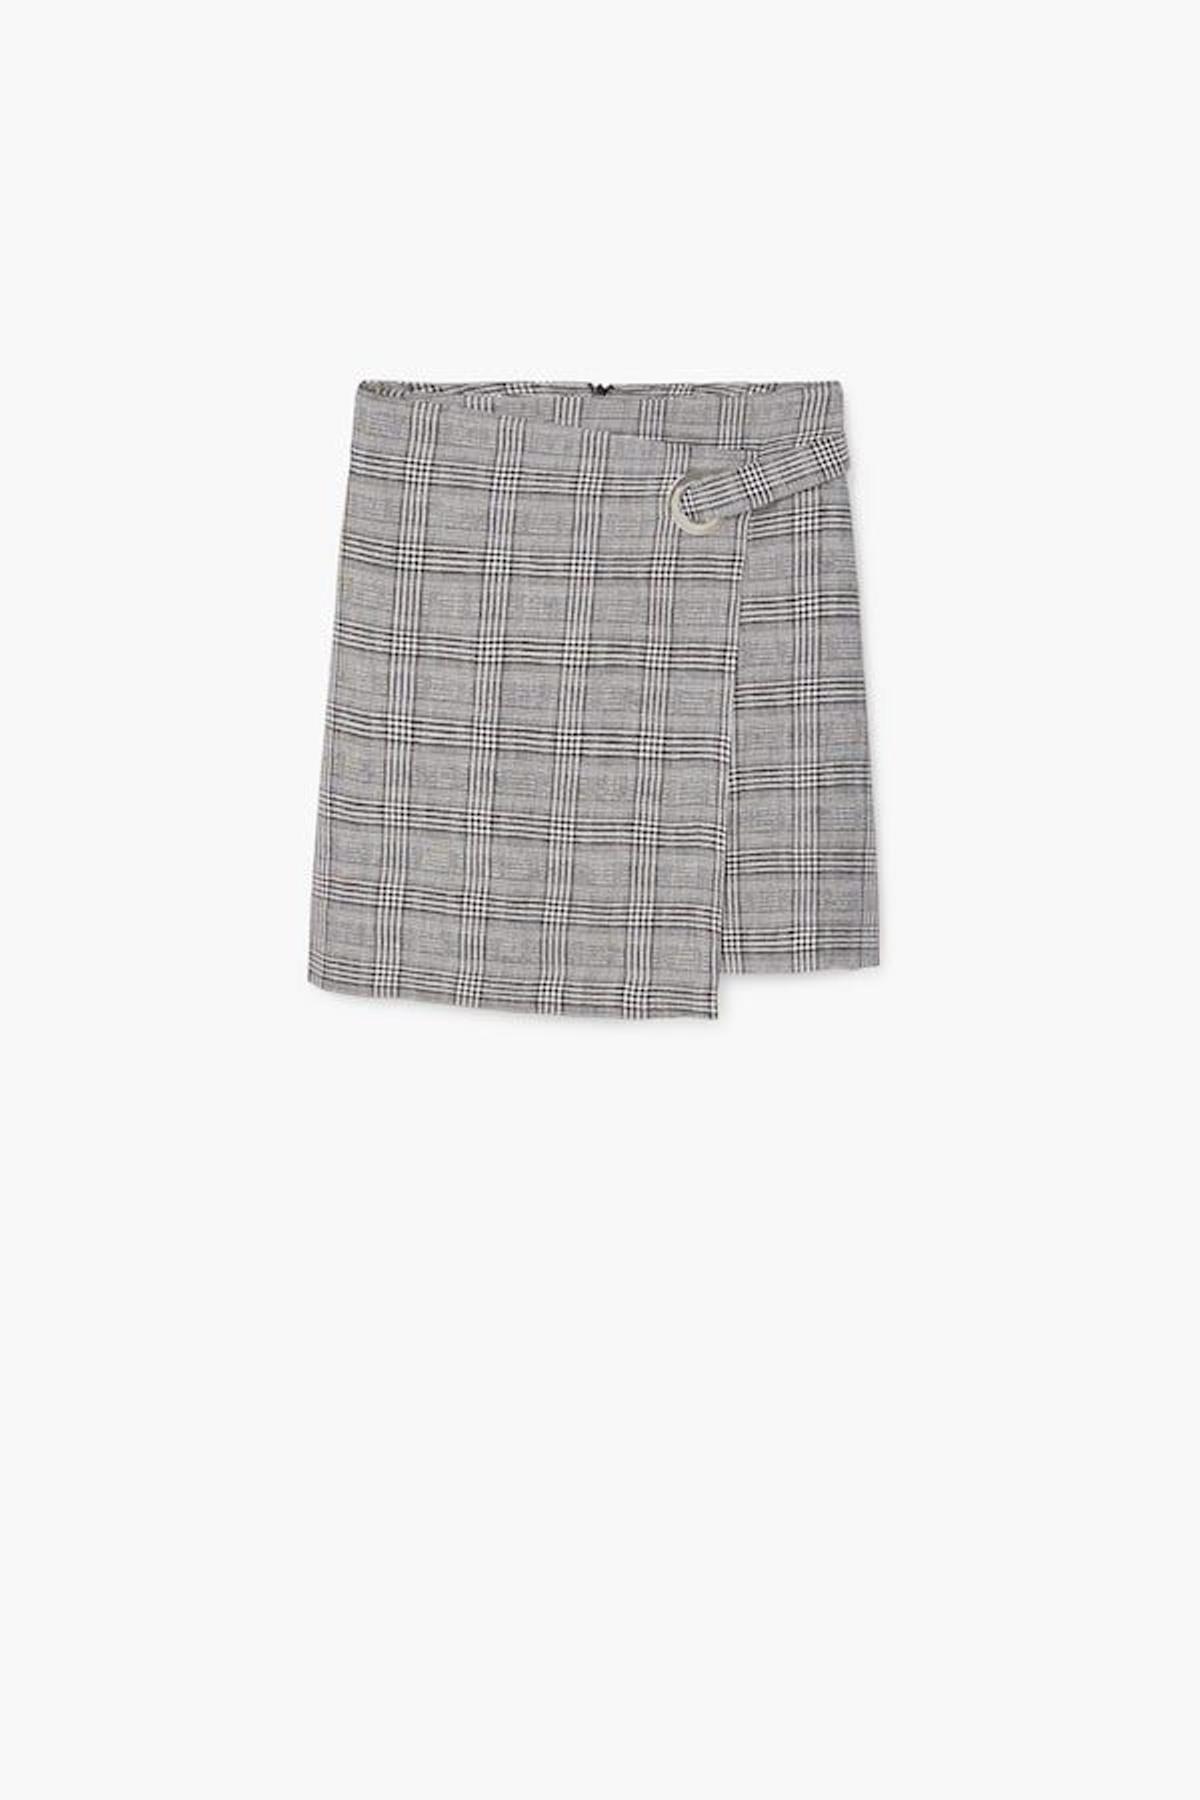 'Working' en verano: Minifalda cruzada, de Mango, 25,99 euros